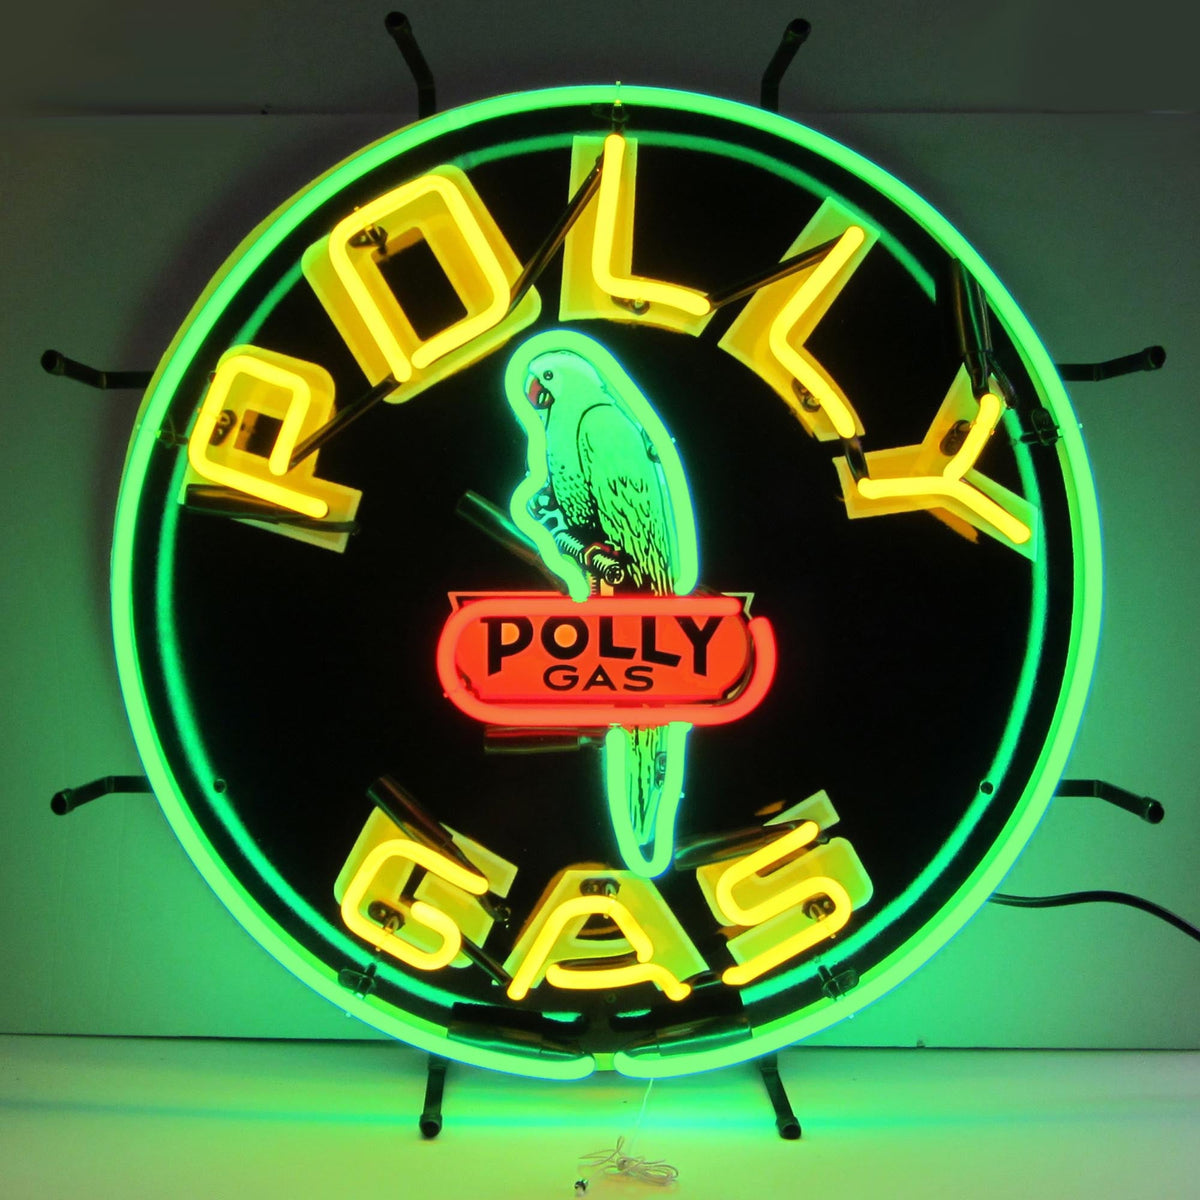 Gas - Polly Gas Neon Sign